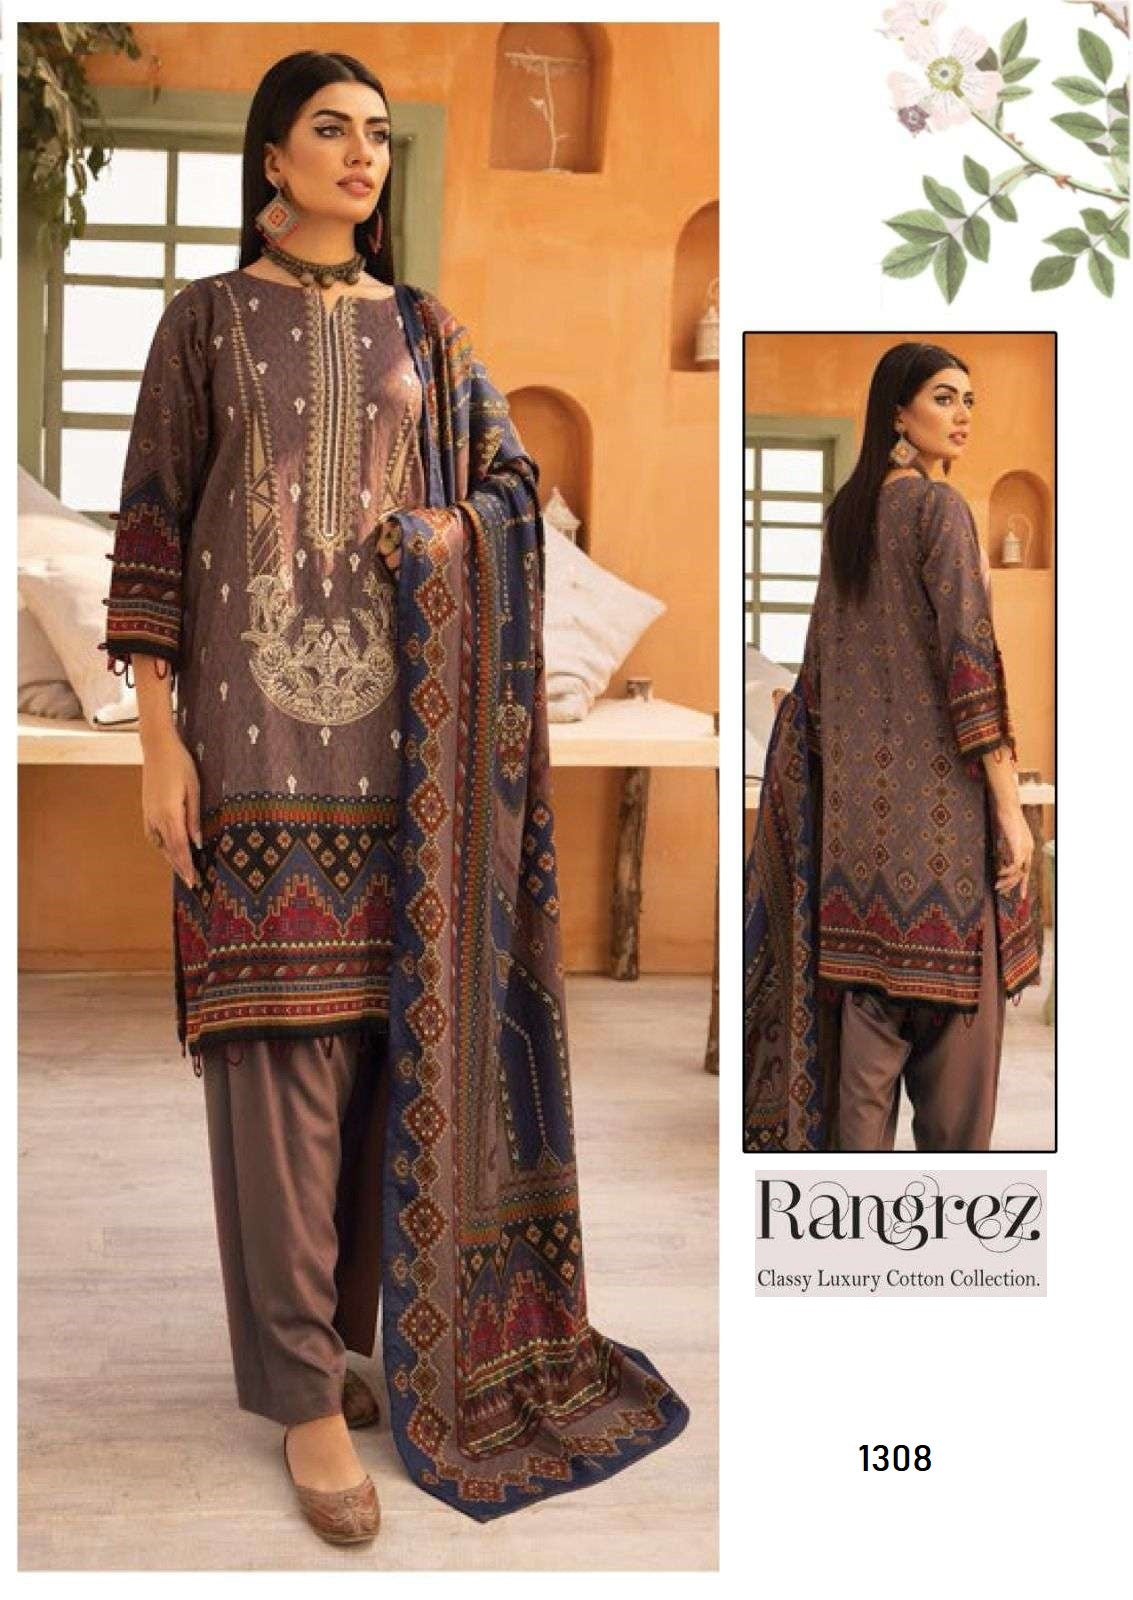 Rangrez Pakistani Designer Pure Lawn Cotton Printed Suit